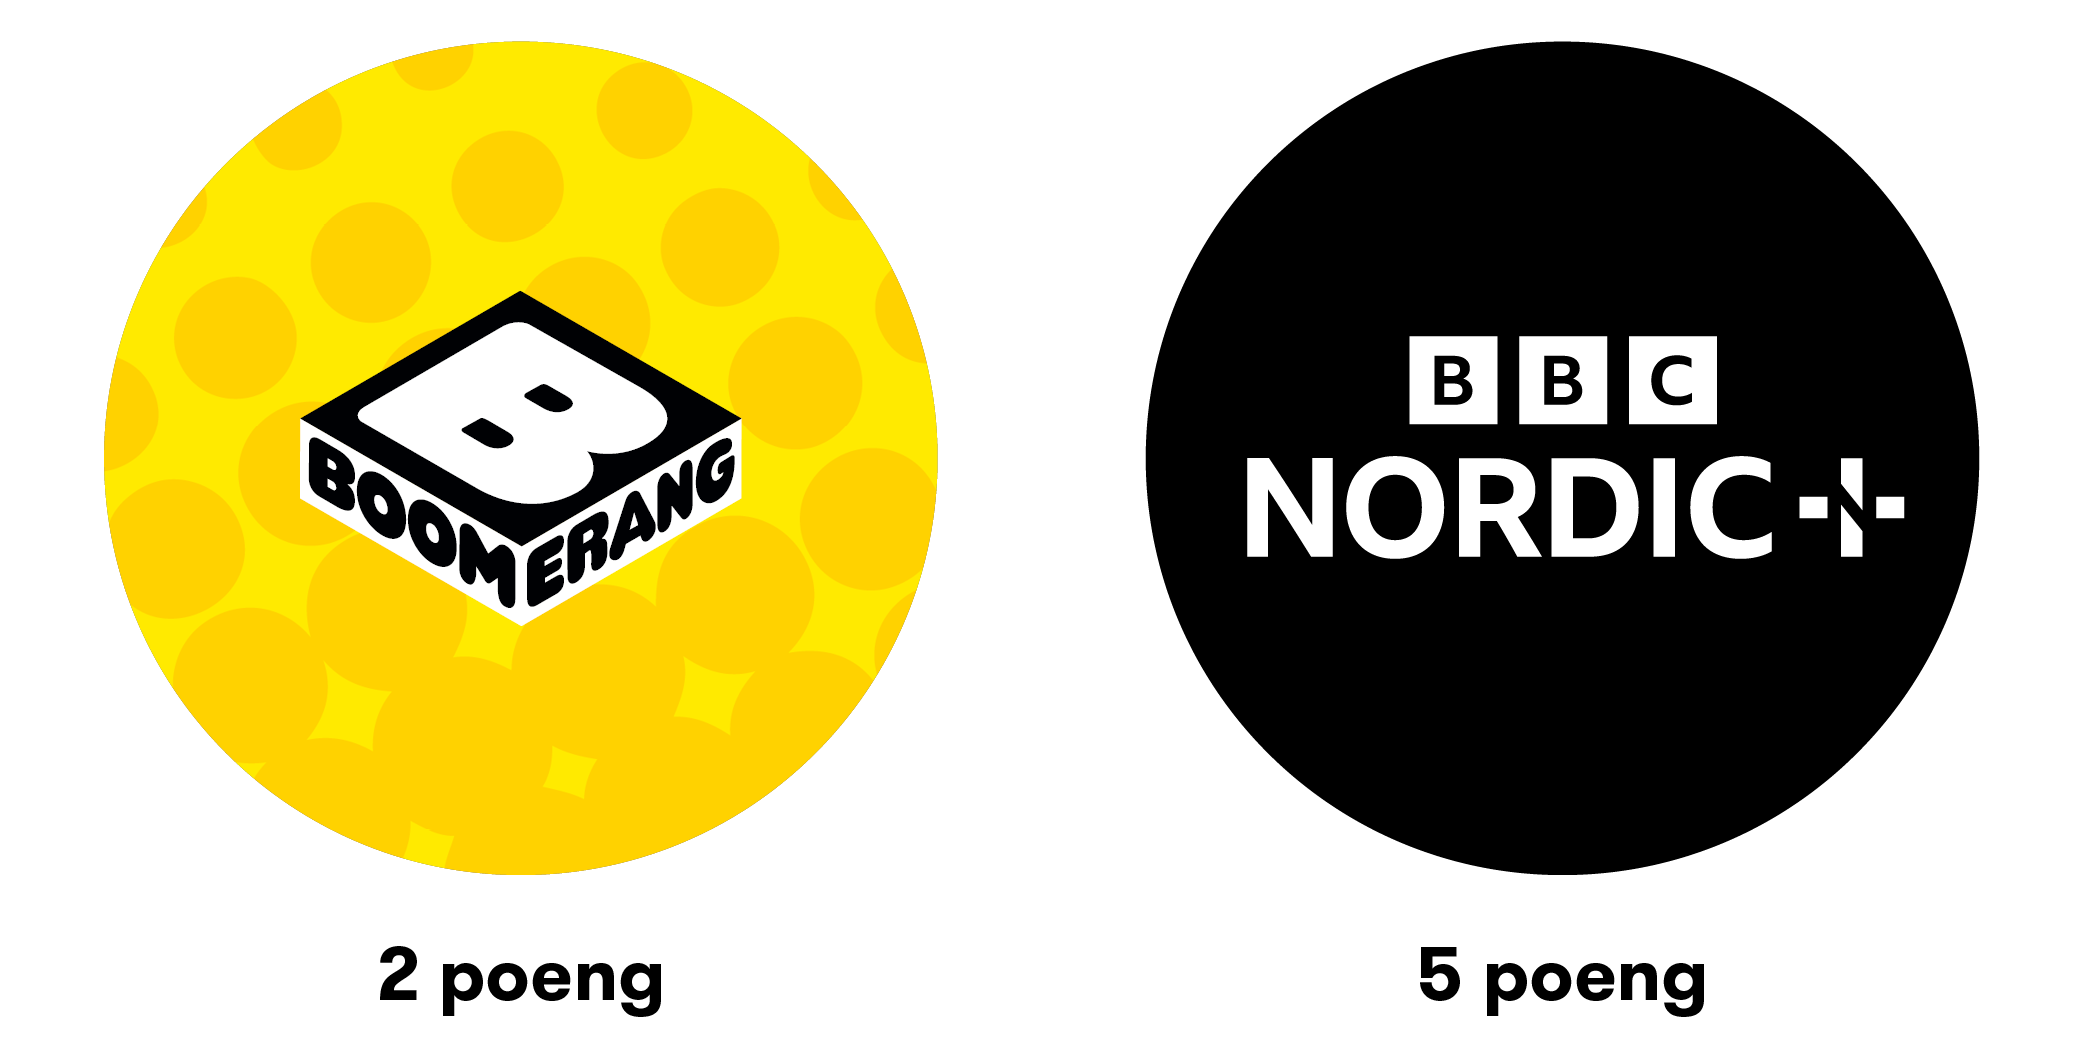 logoer-sirkel-bbcnordic+ogboomerang